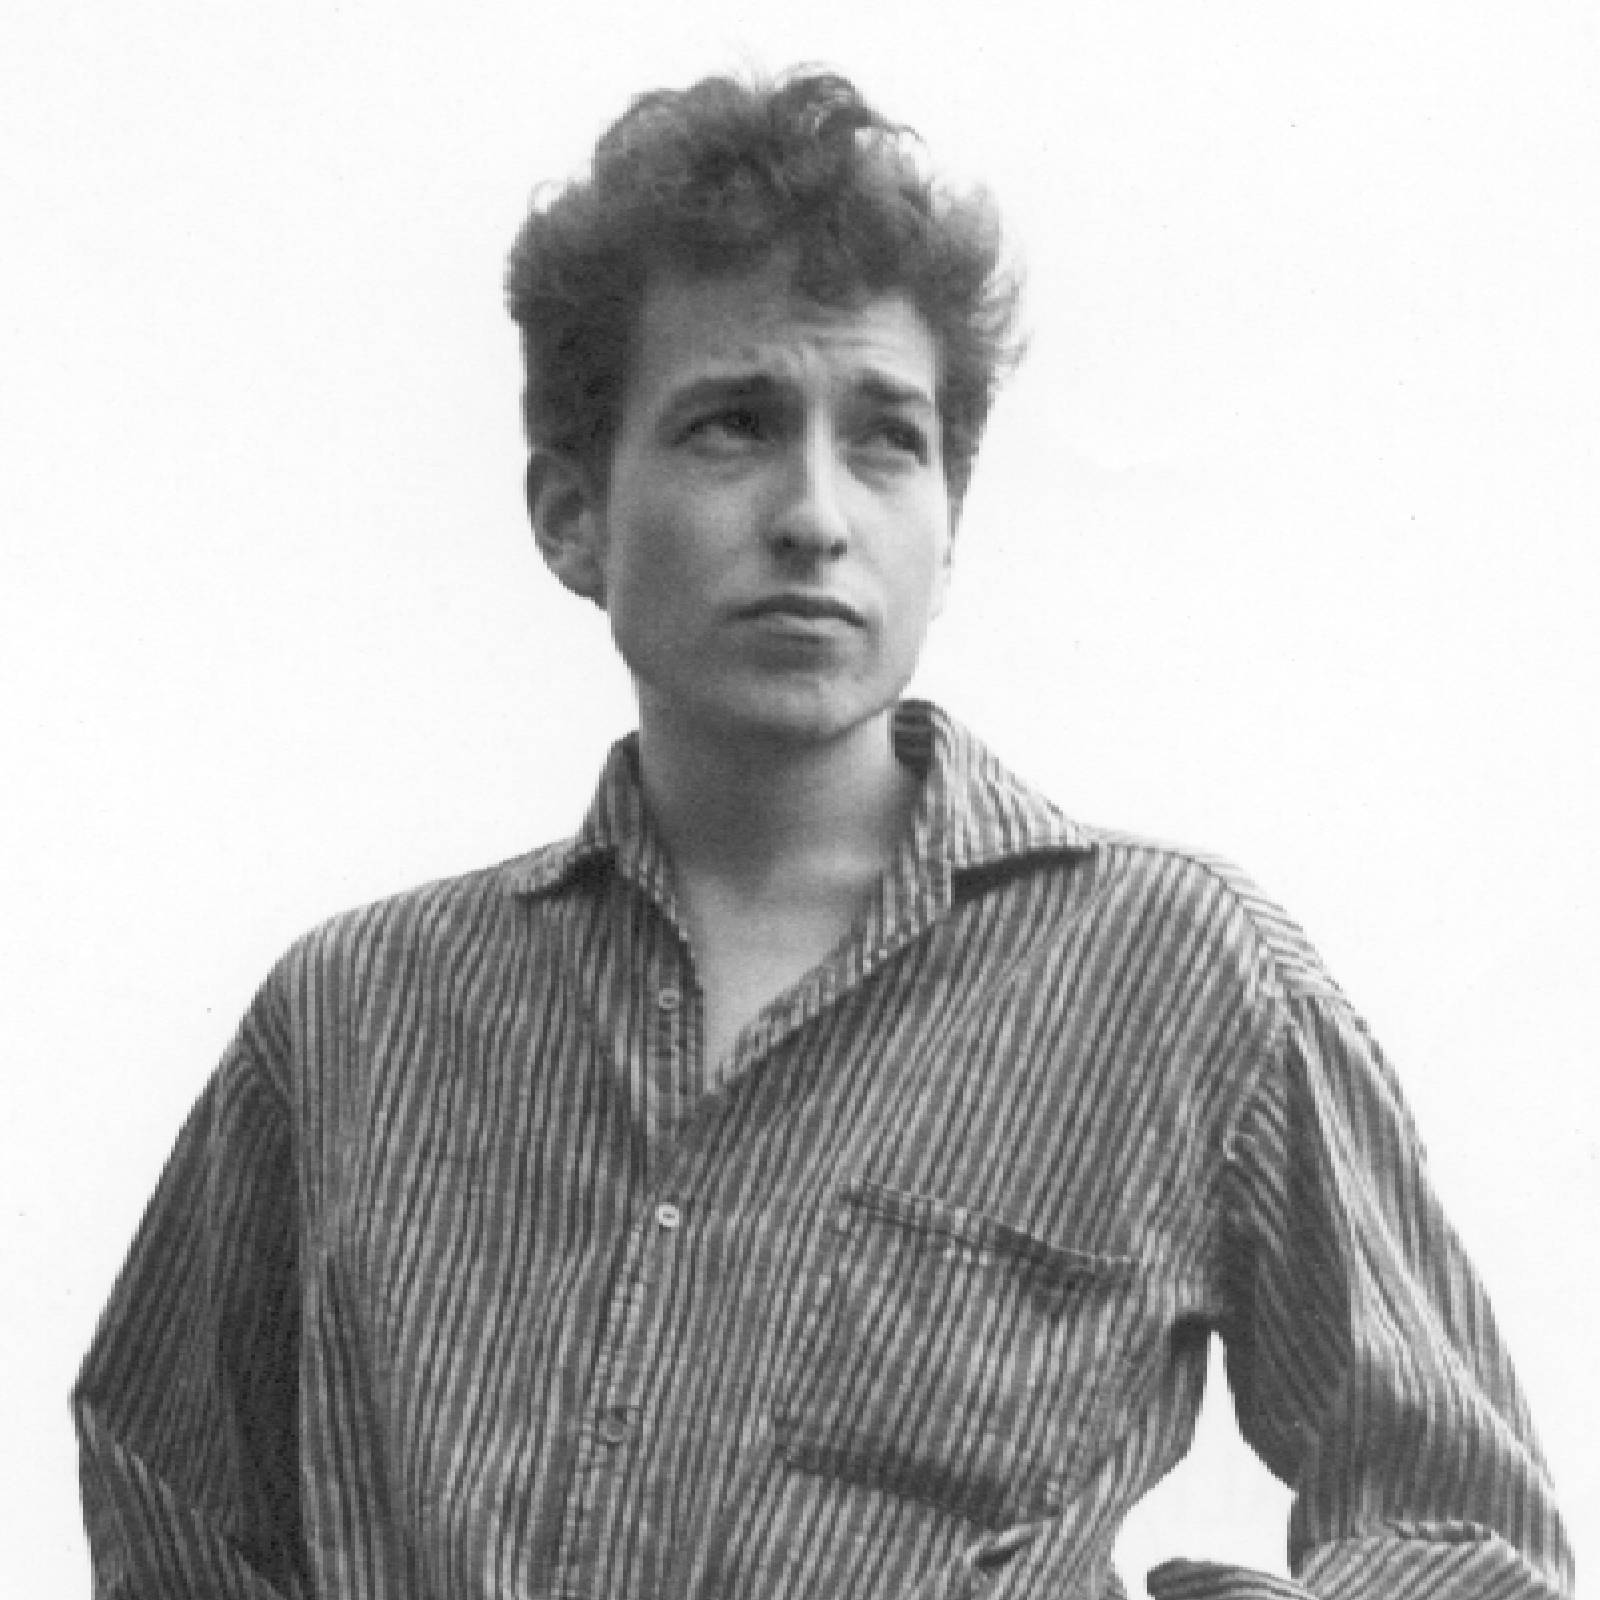 Café del sur - Reinventando a Bob Dylan - 17/12/23